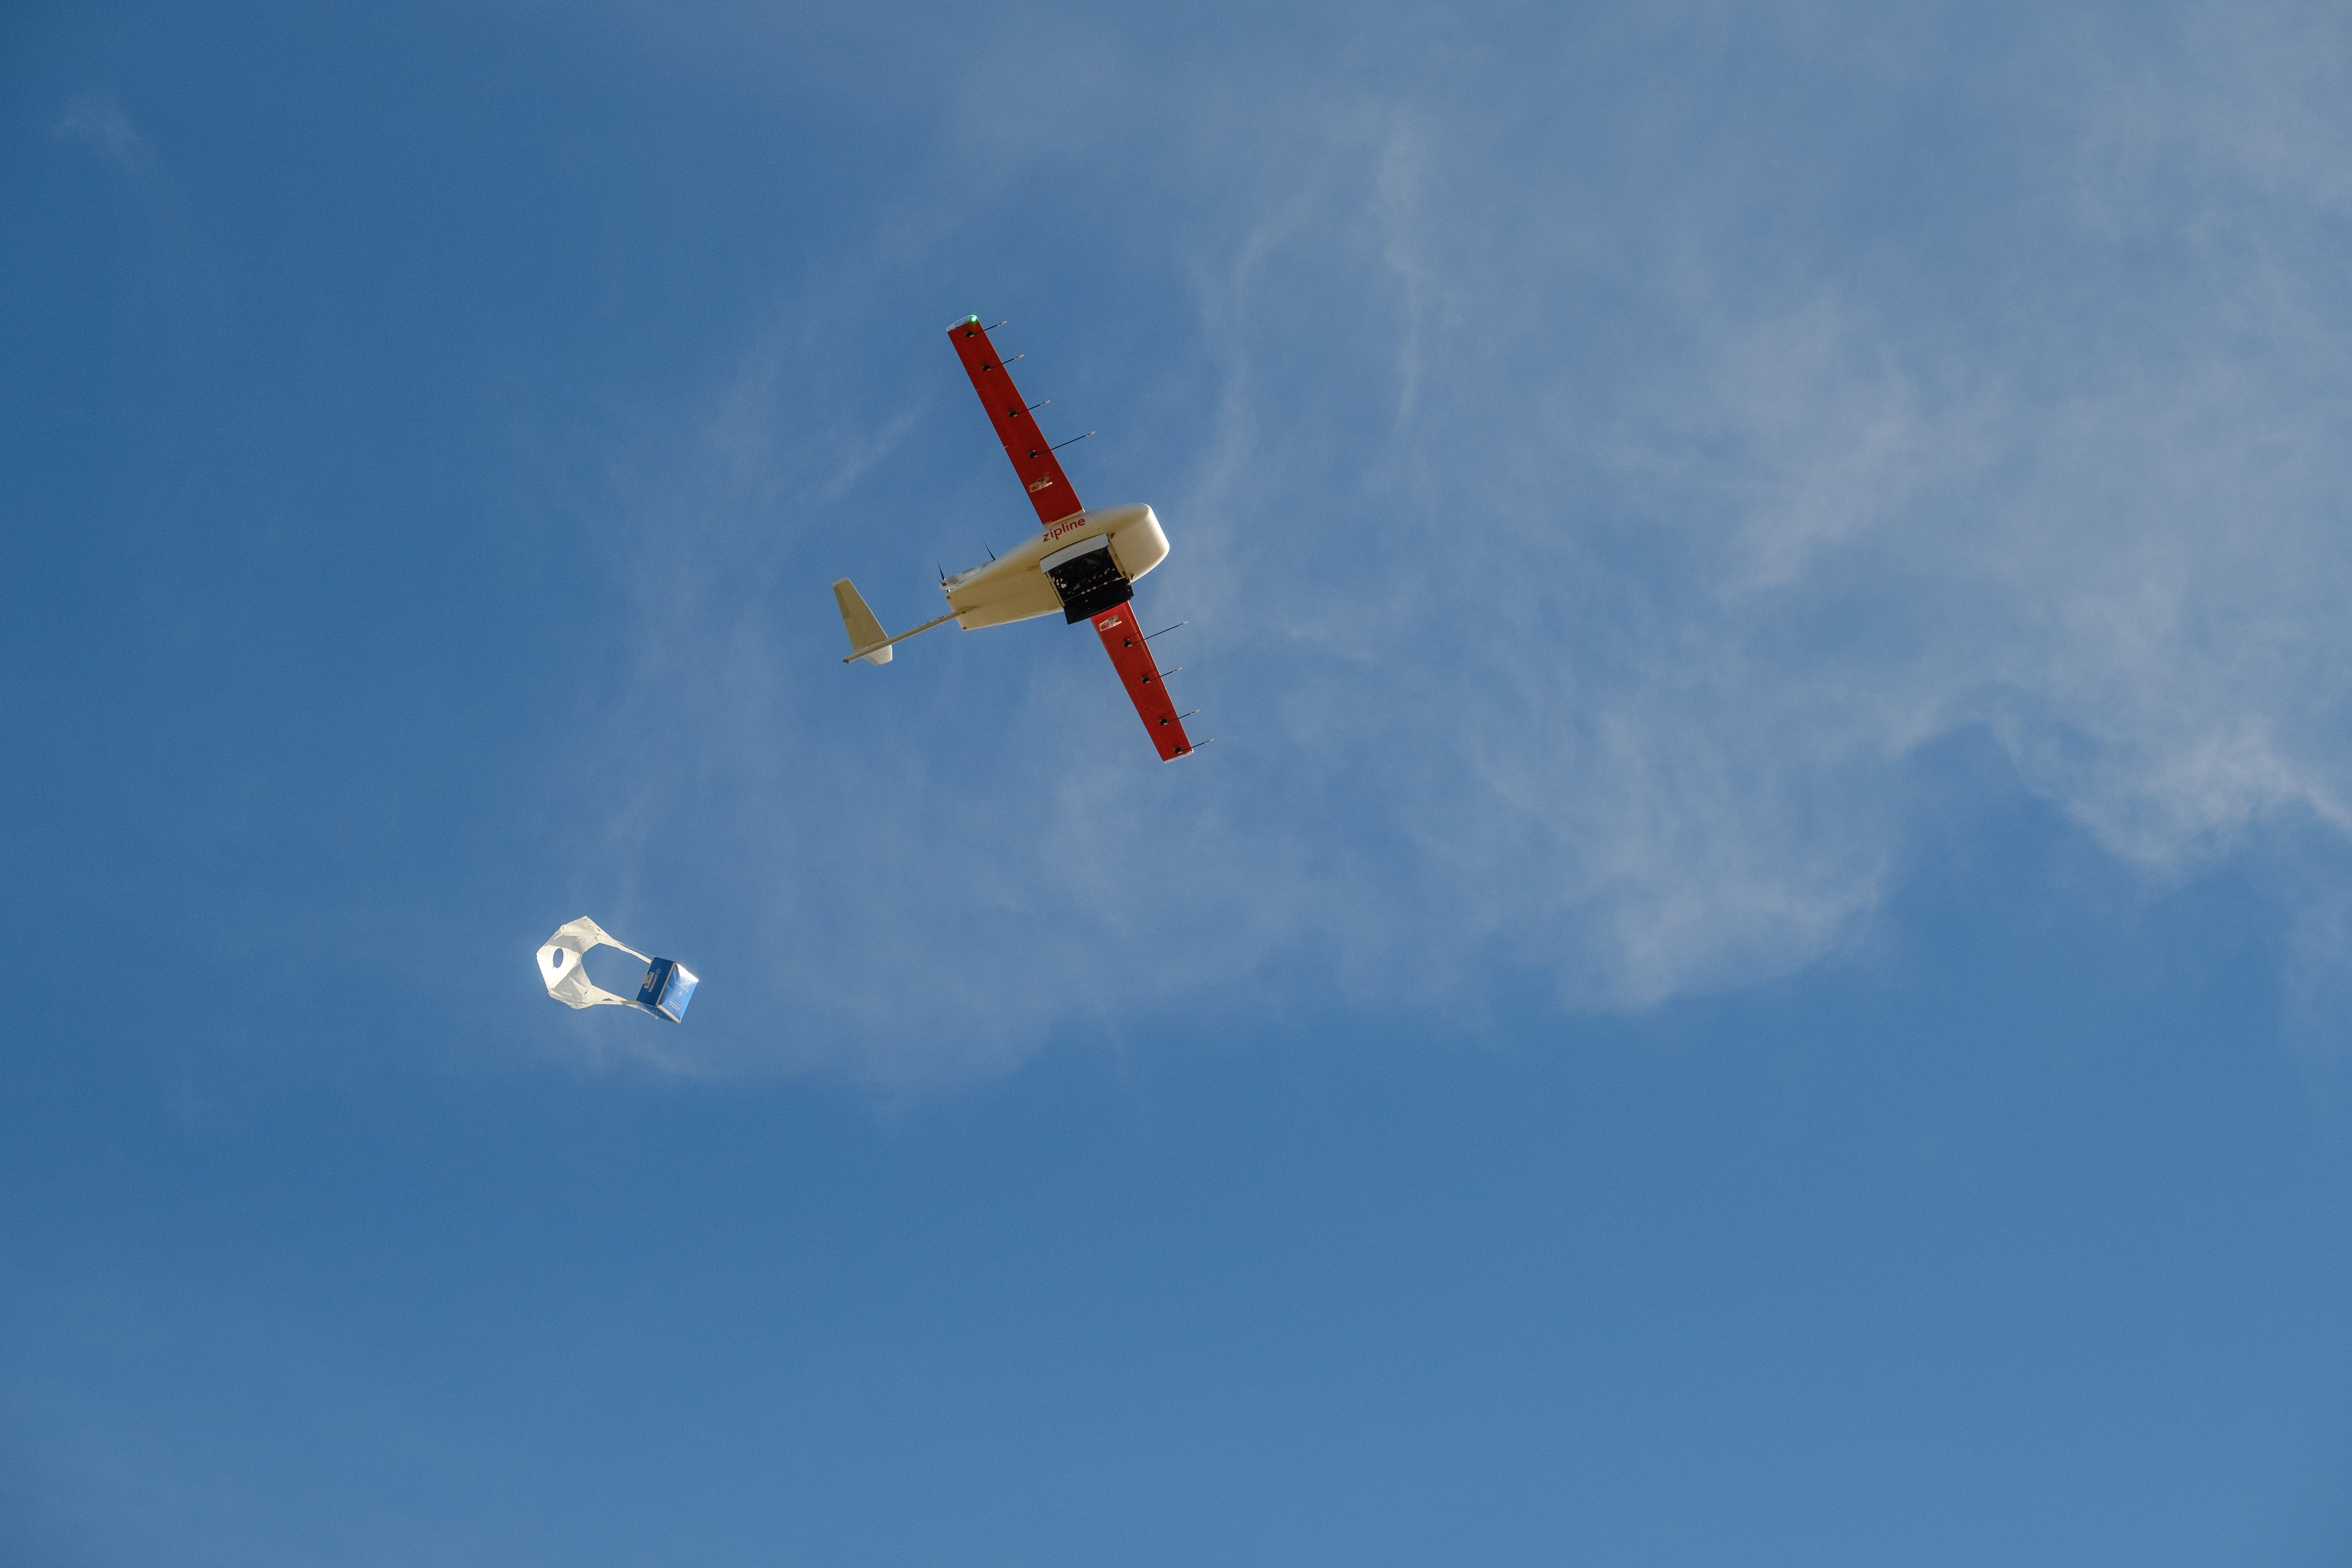 A Zipline drone drops a package. 